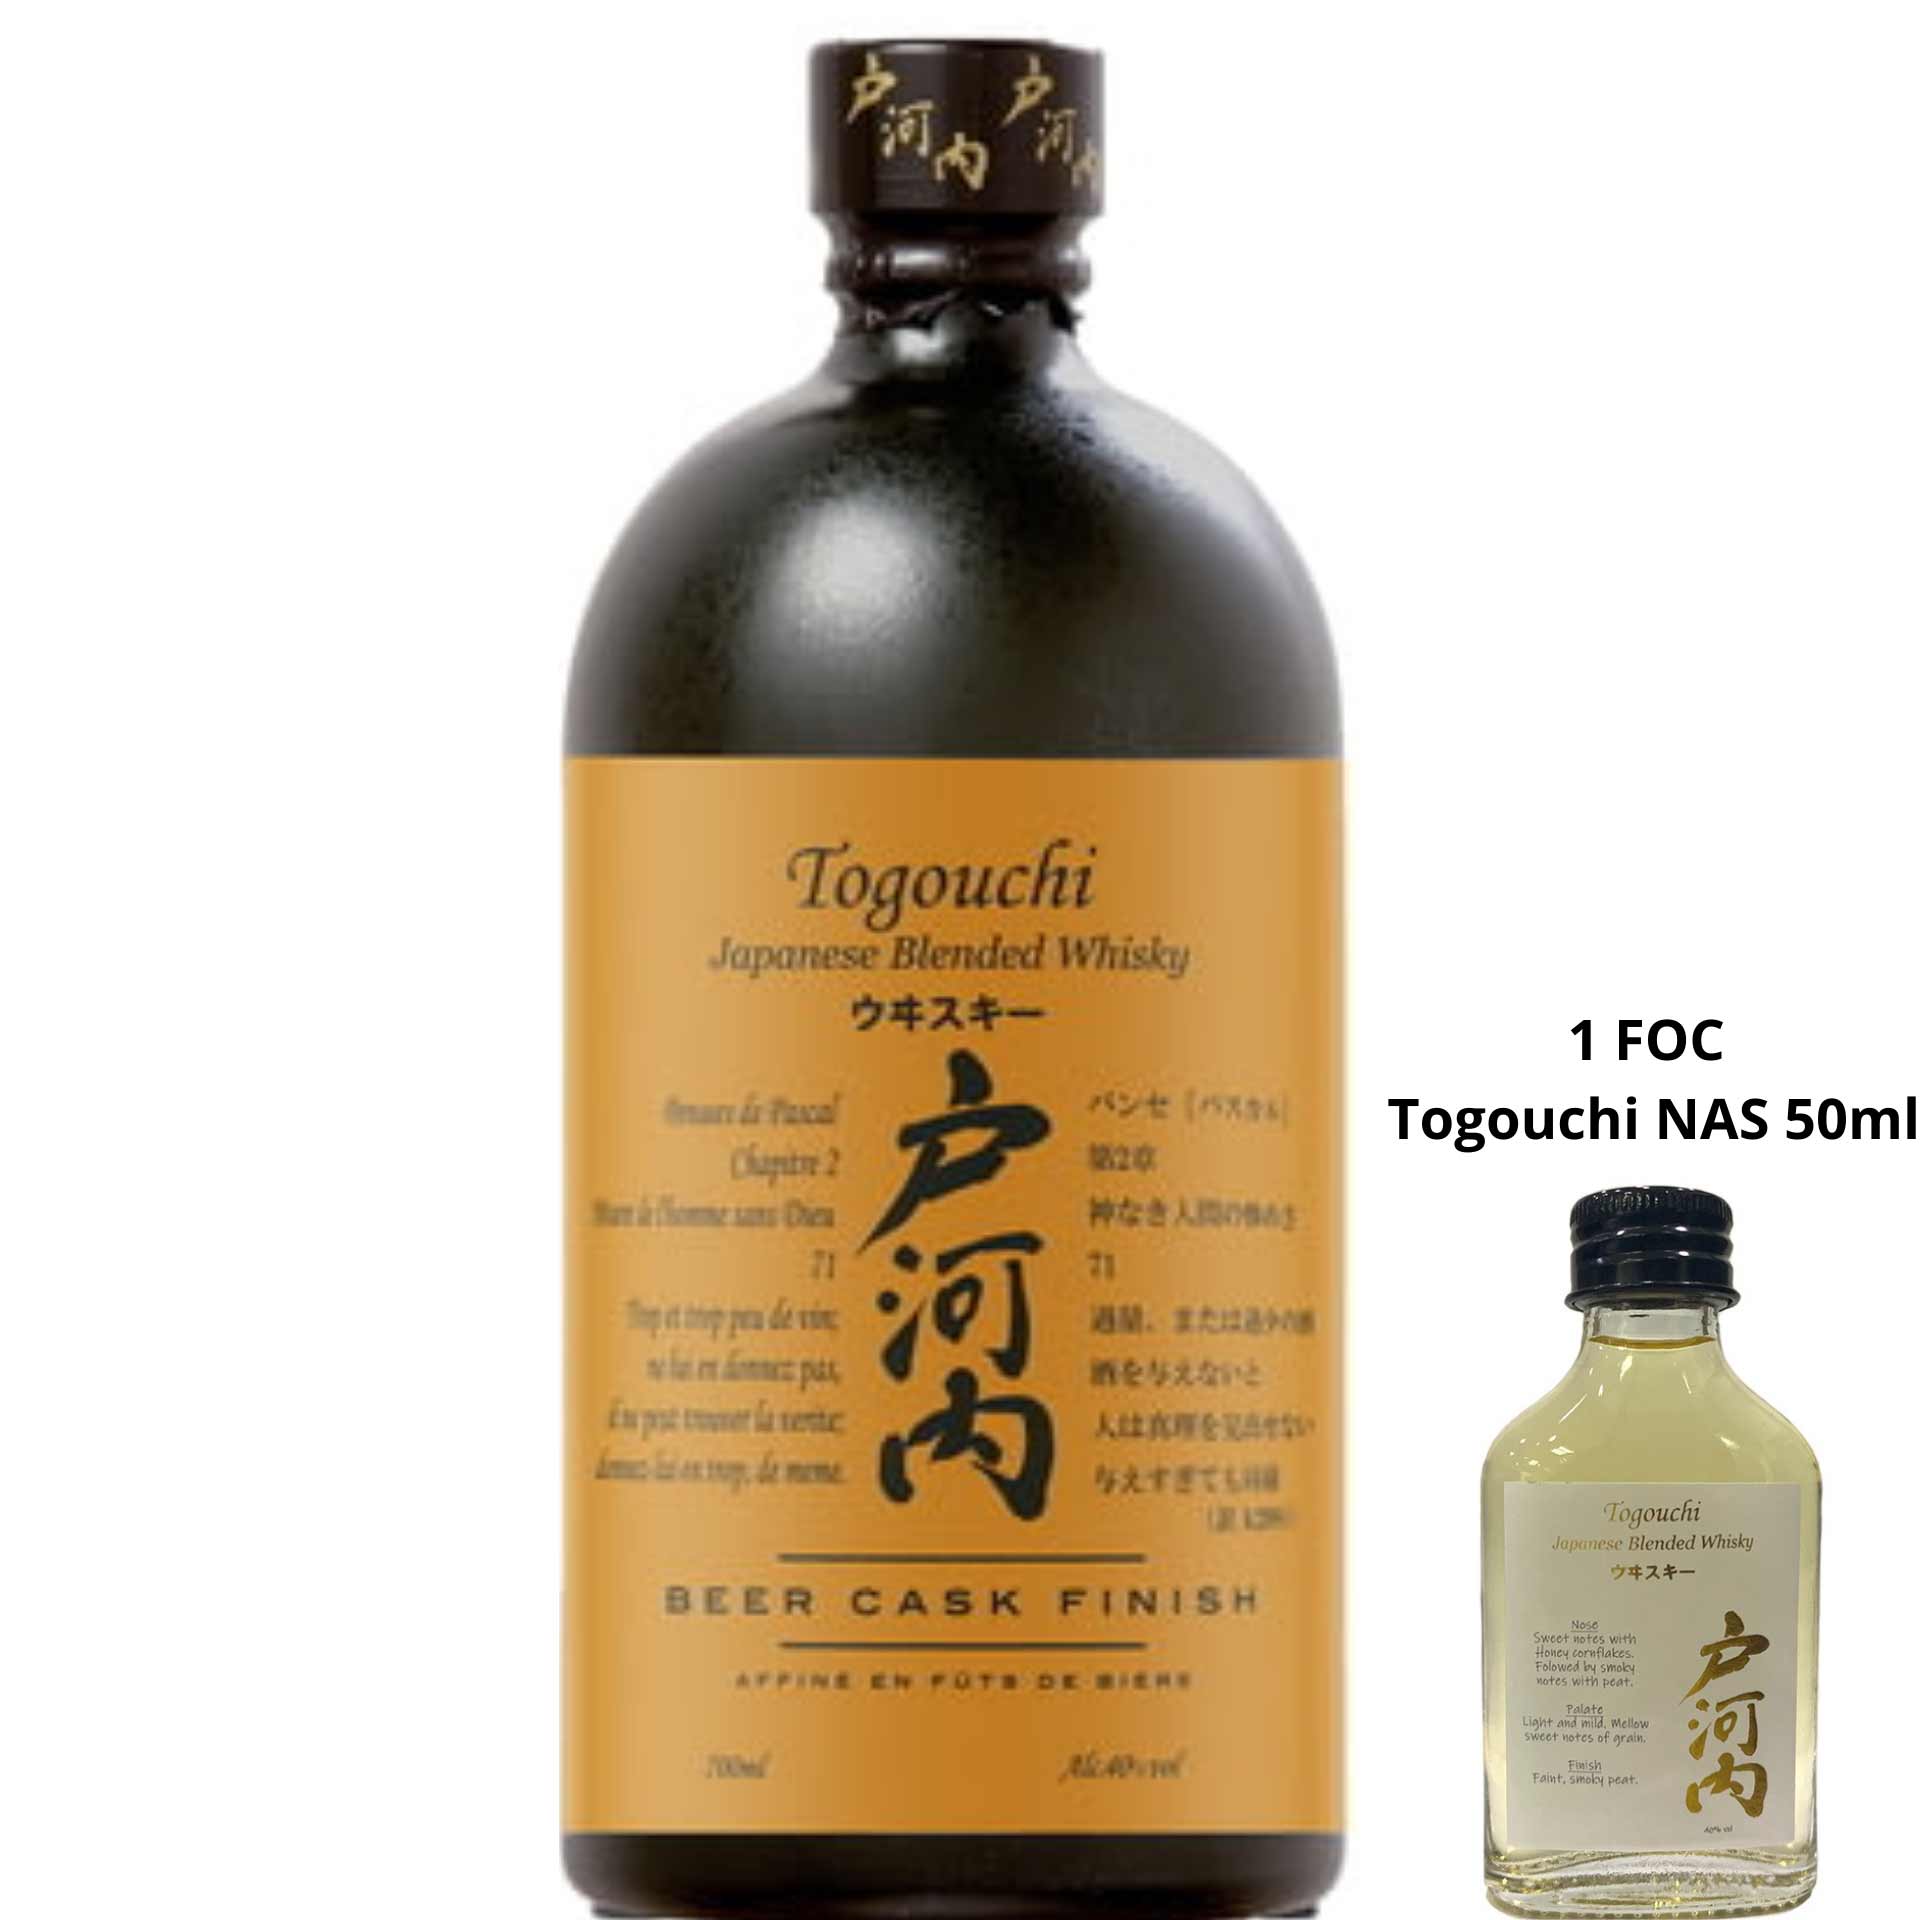 Togouchi Blended Whisky Beer Cask Finish 700ml + FOC Togouchi NAS 50ml